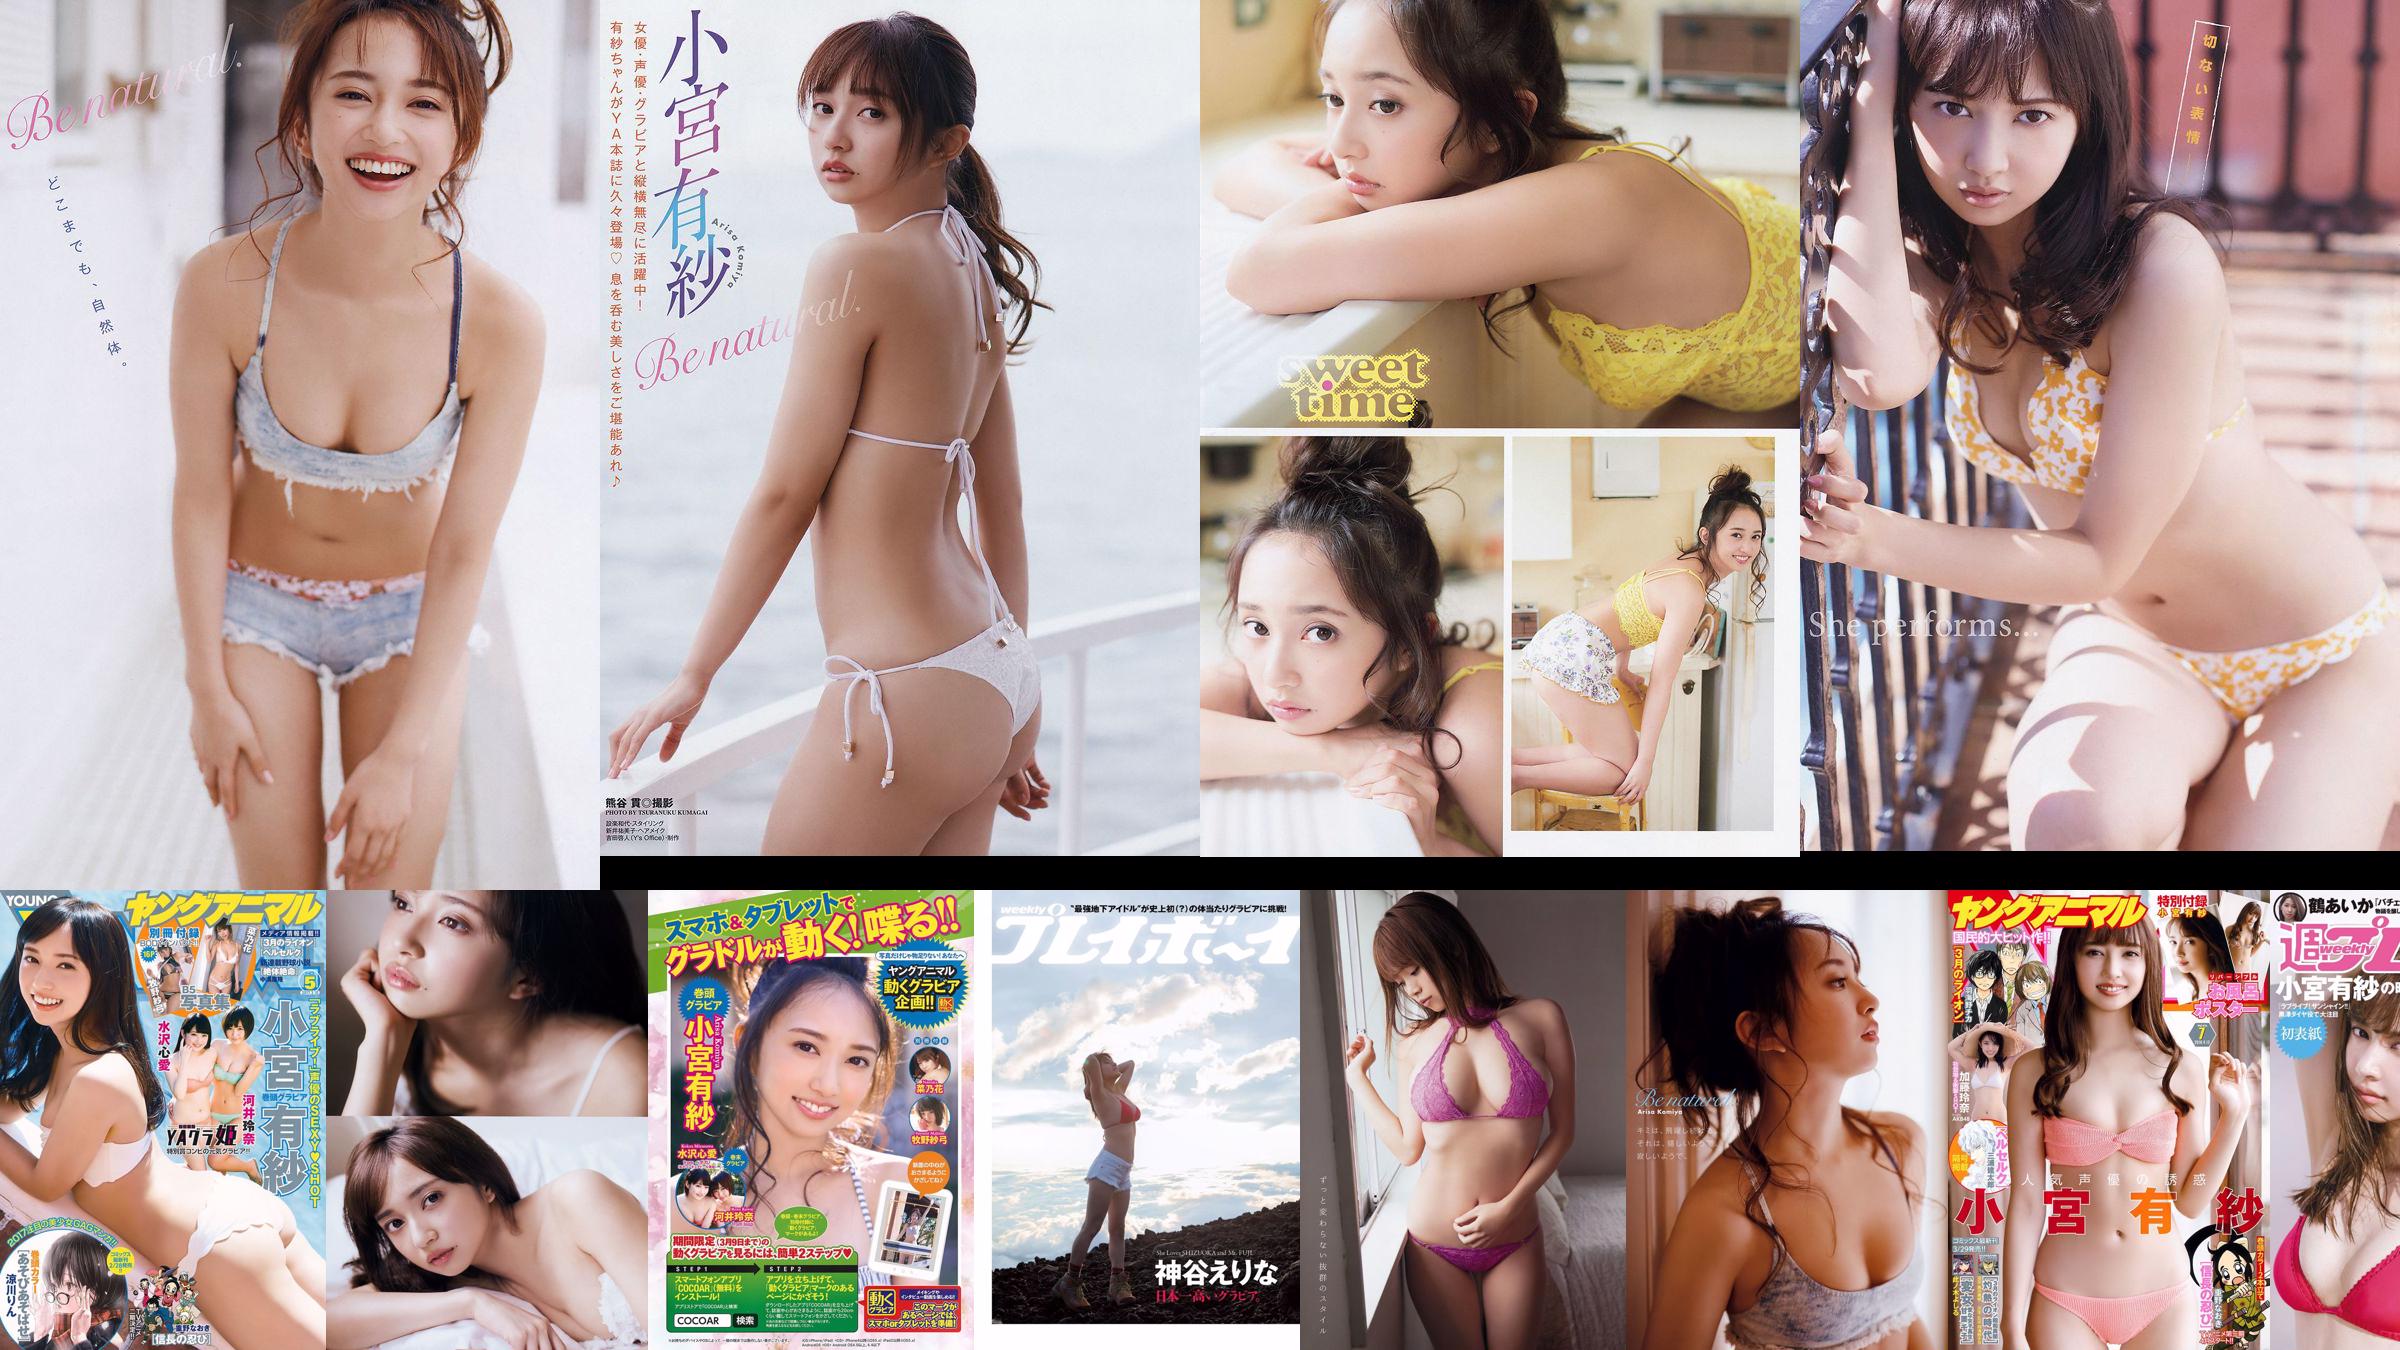 Arisa Komiya Aika Tsuru Sayaka Isoyama Kasumi Arimura Rina Otomo Sei Shiraishi Erina Kamiya [Weekly Playboy] 2017 No.41 Photographie No.5798b7 Page 1